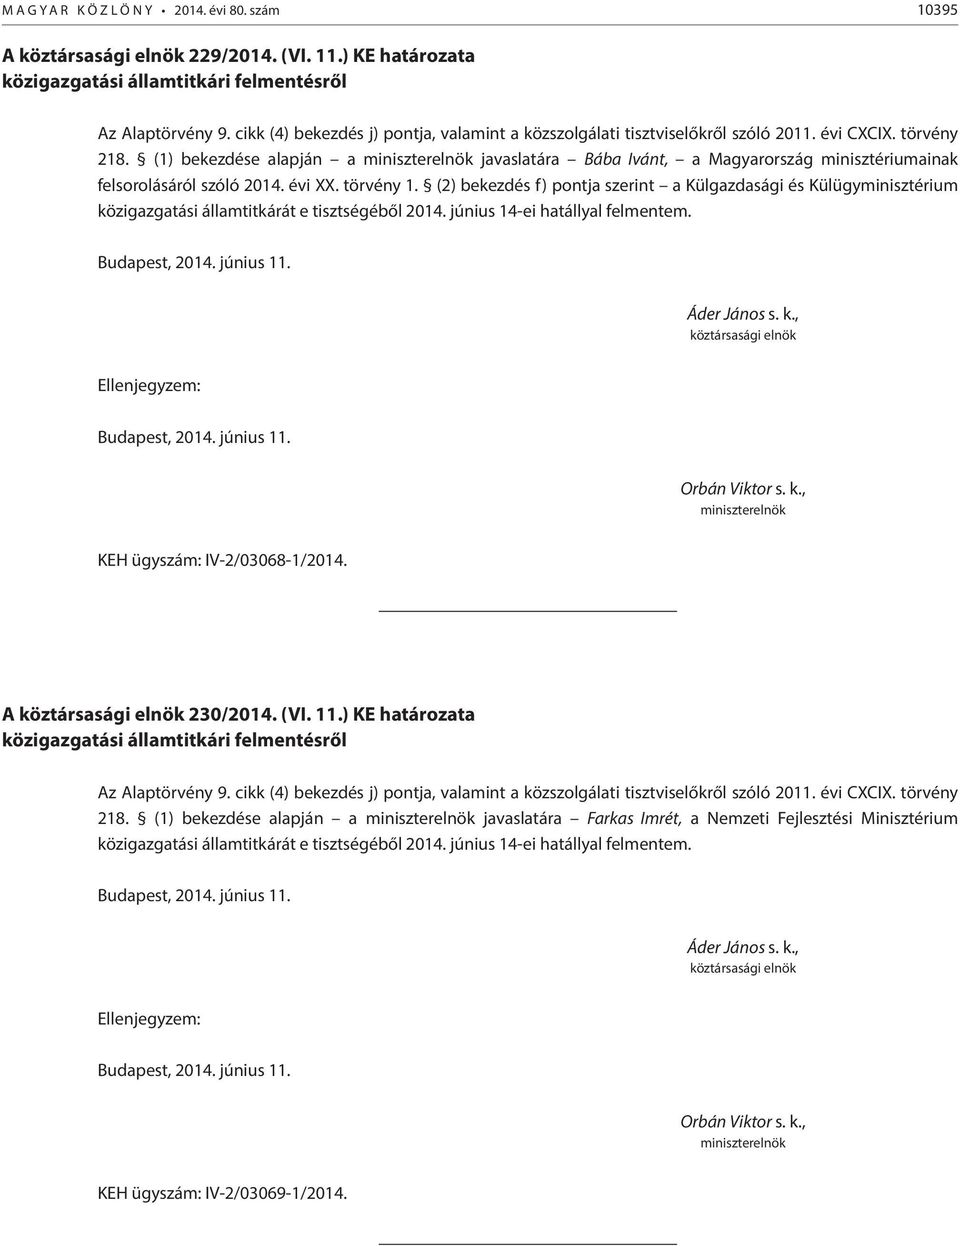 (1) bekezdése alapján a javaslatára Bába Ivánt, a Magyarország minisztériumainak felsorolásáról szóló 2014. évi XX. törvény 1.